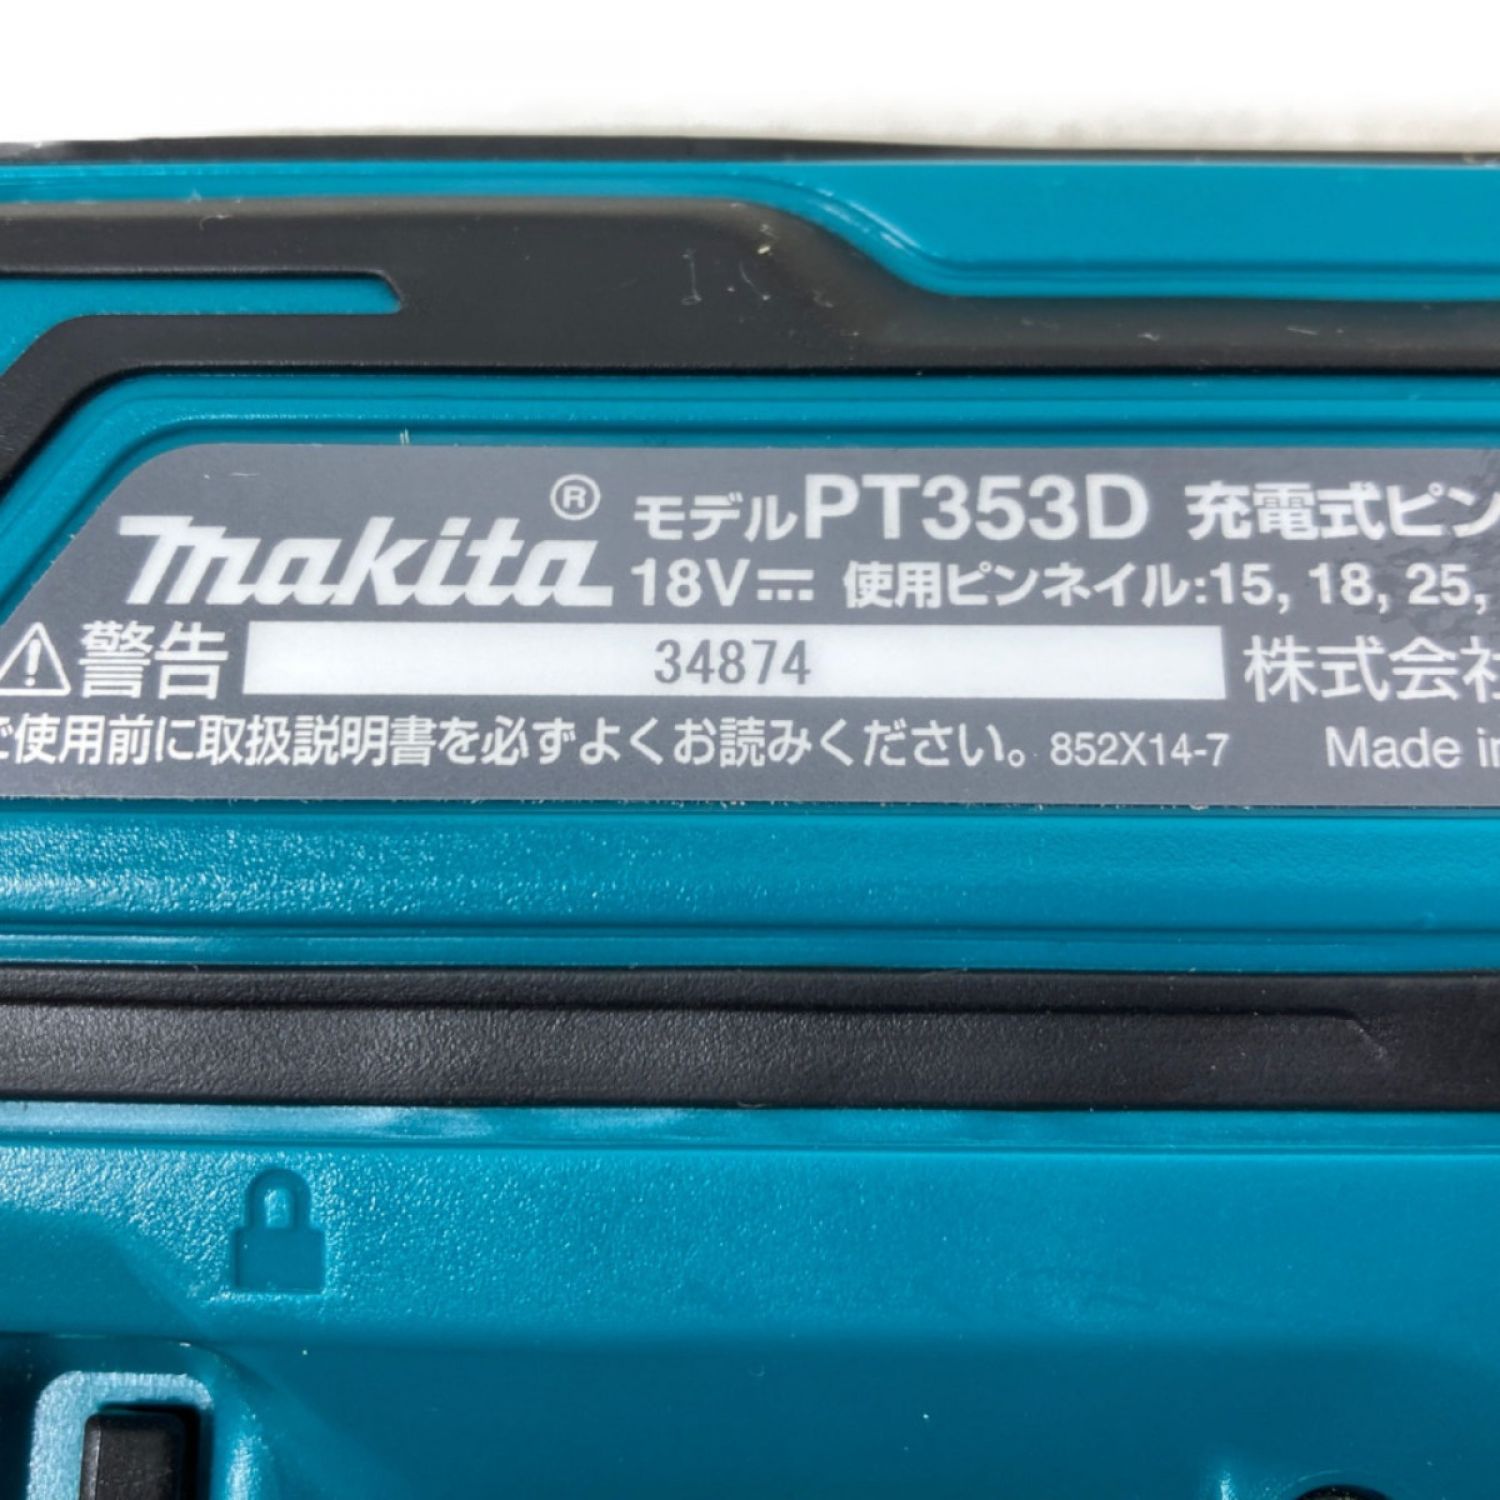 マキタ 18v ピンタッカ PT353D 充電器 makita ピンネイル